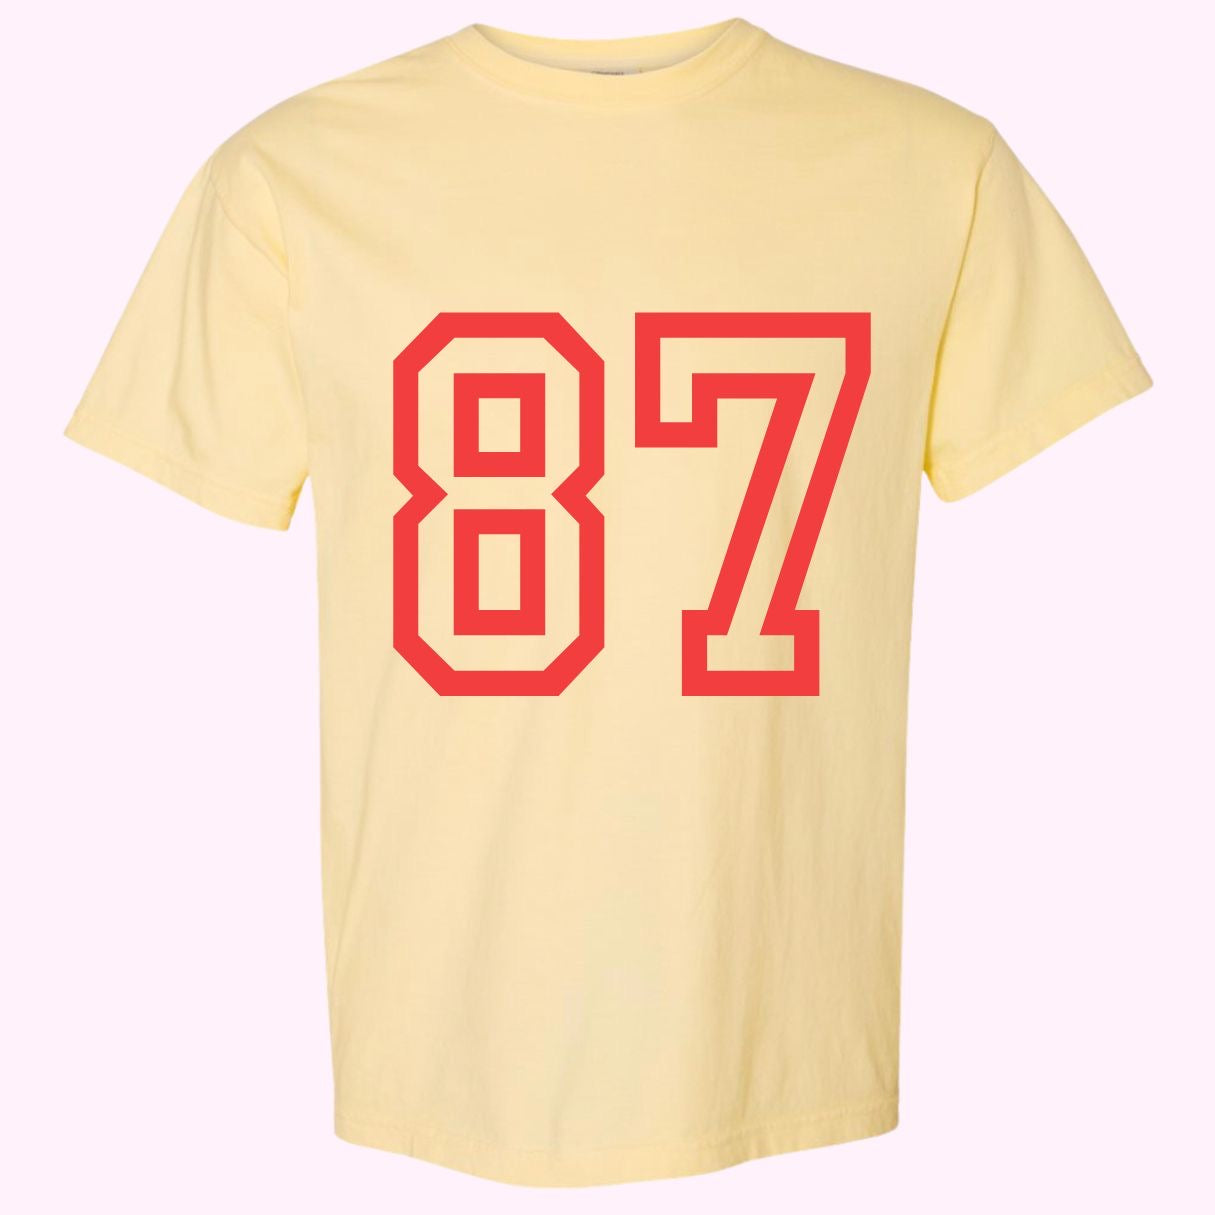 Jersey T-Shirt Kelce 87